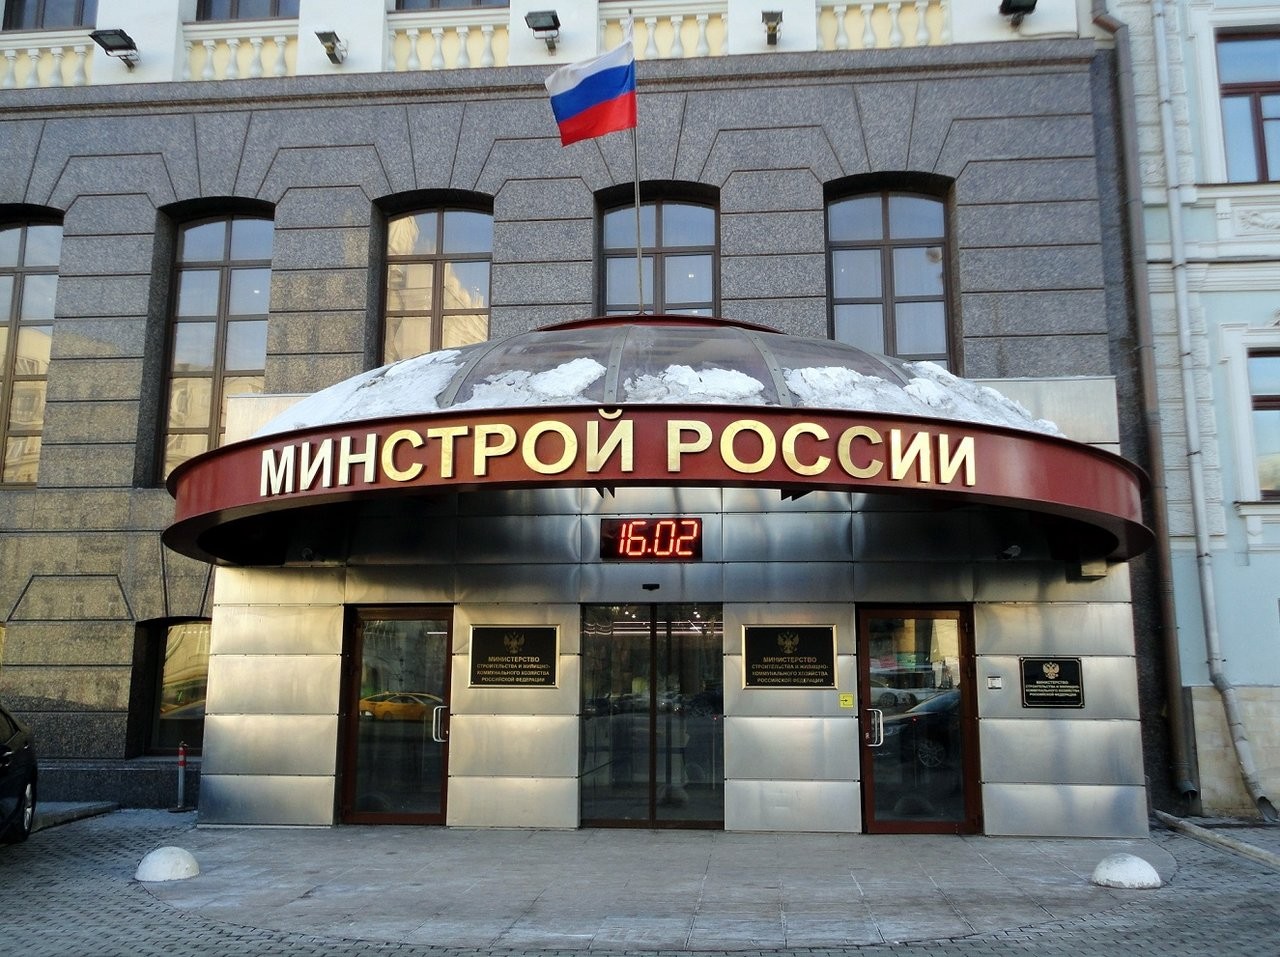 Калмыкия в числе шести регионов страны получит господдержку по линии Минстроя России